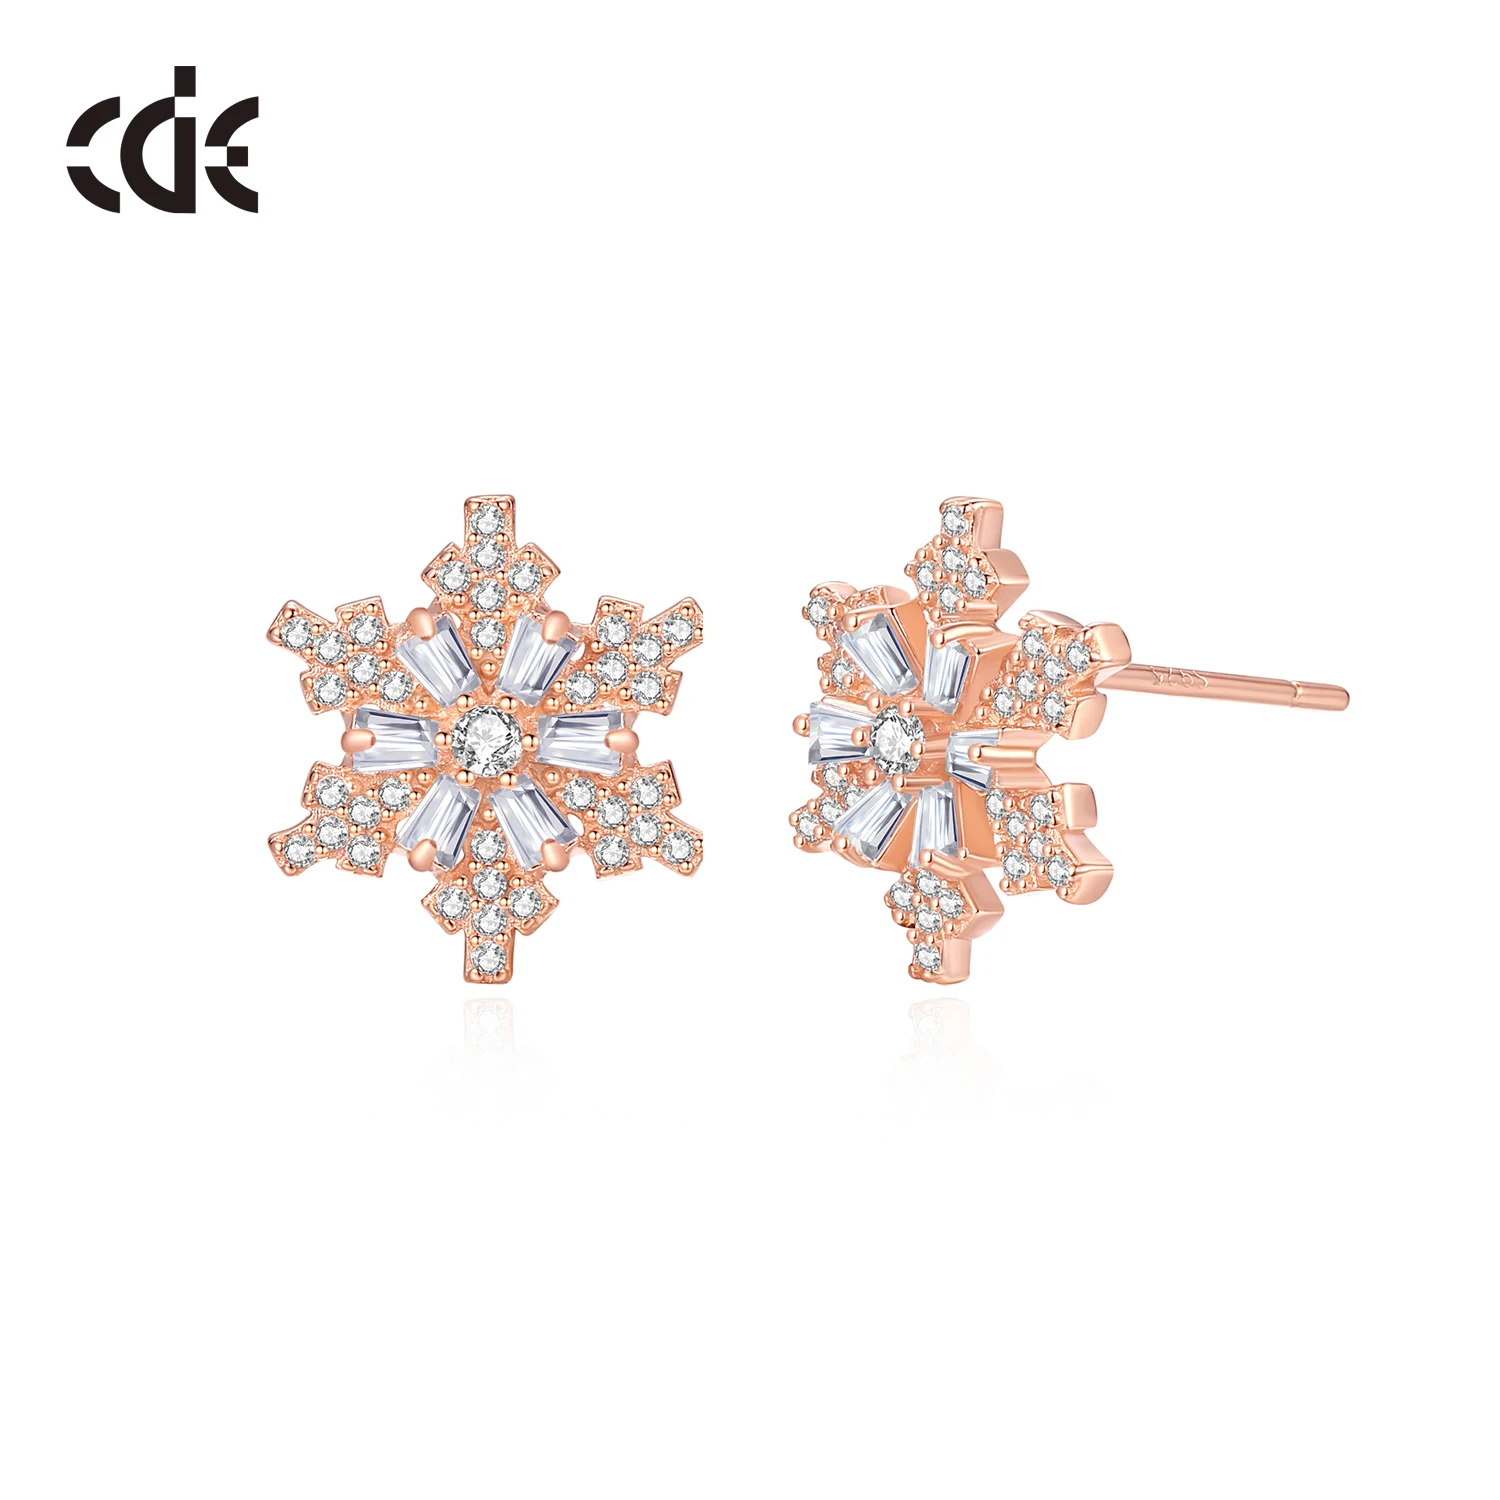 CDE Z16386 Fine 925  Sterling Silver Jewelry Zircon Snow Earrings Wholesale Rose Gold Plated Stud Earring Christmas Earring